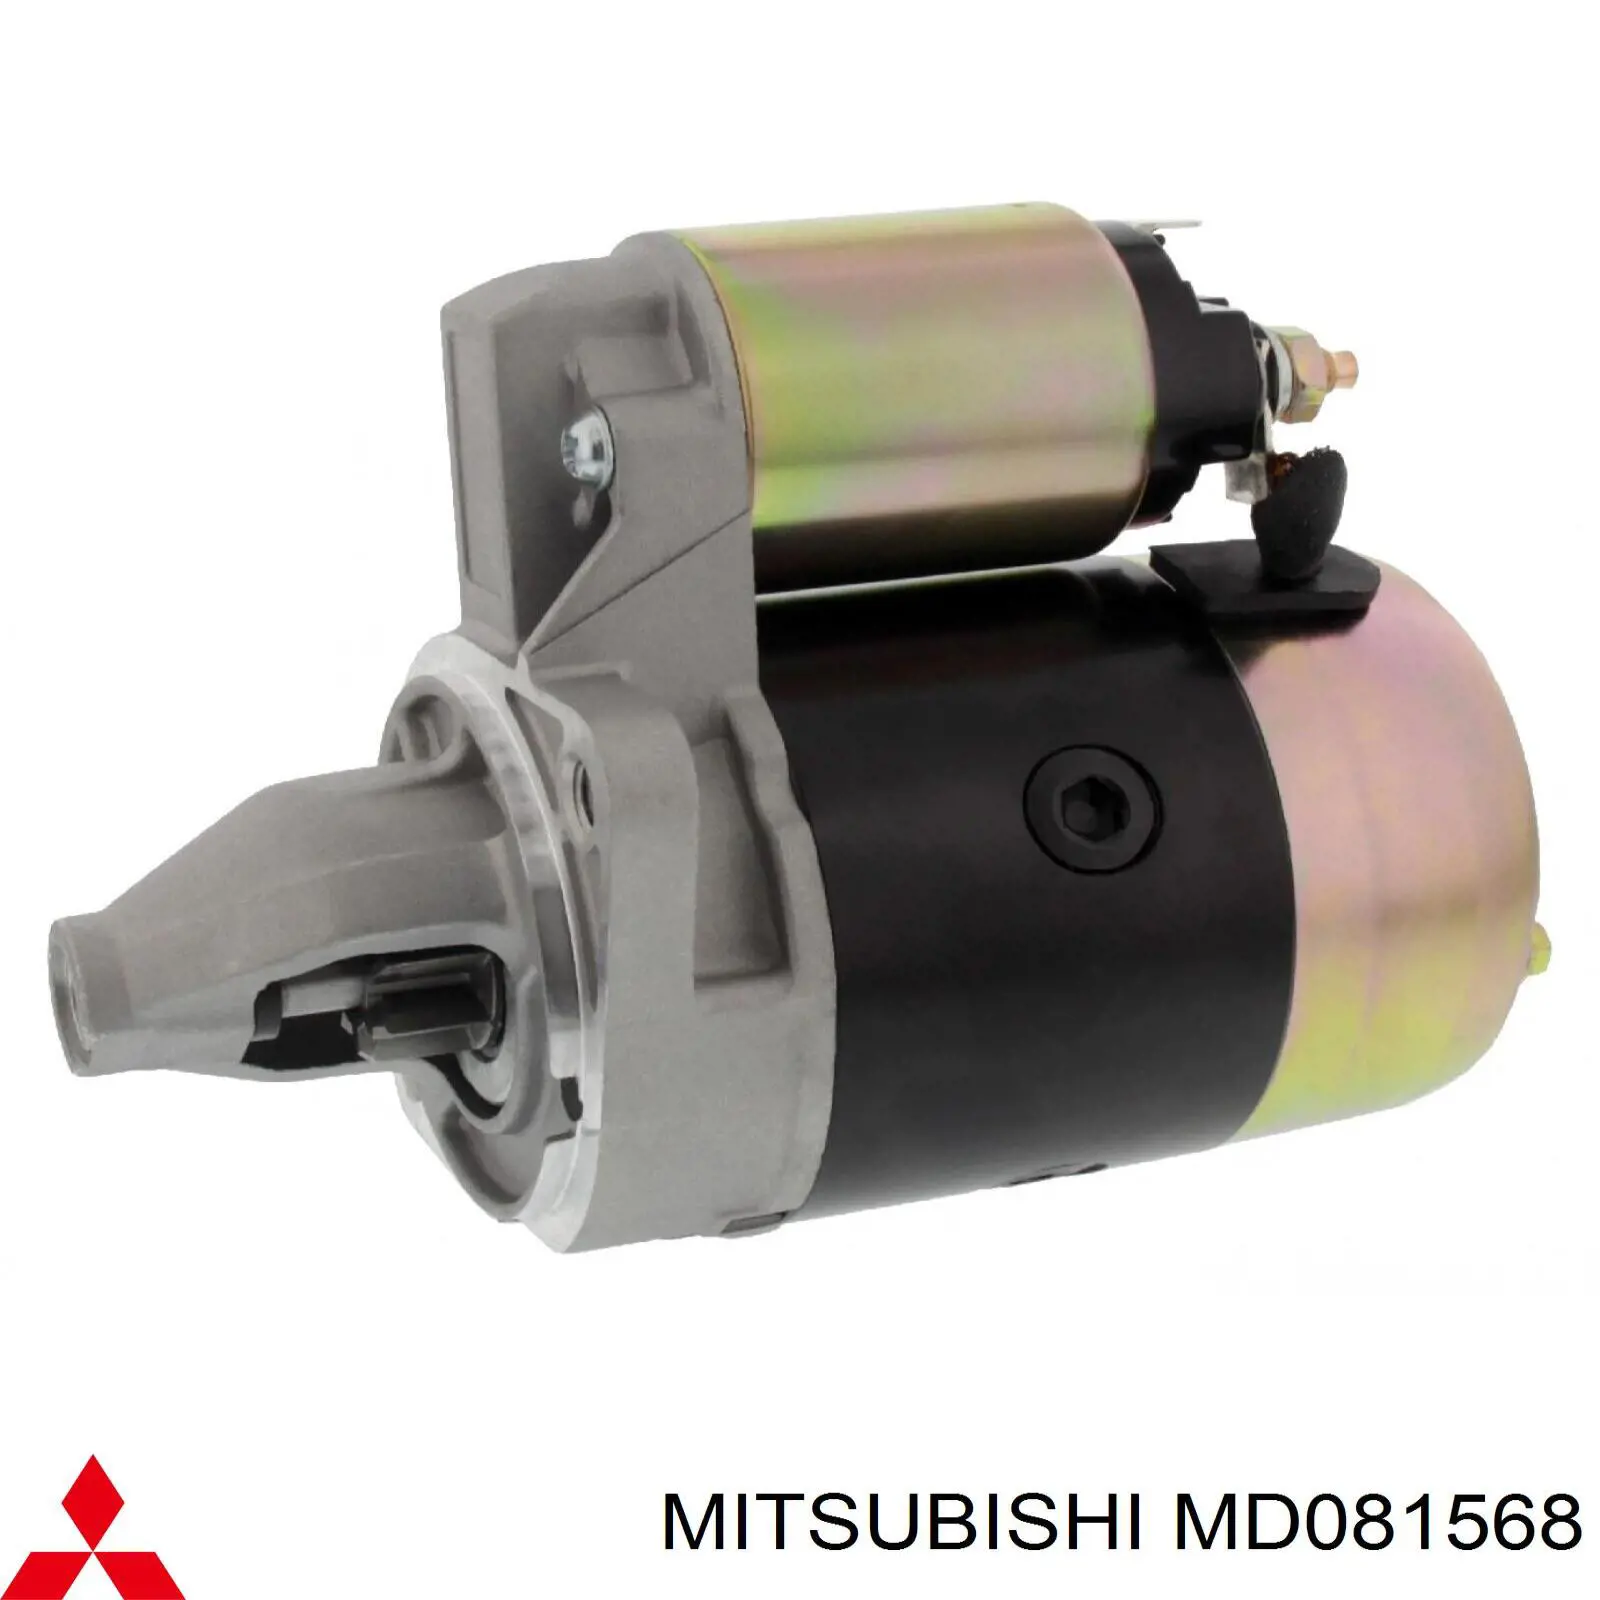 MD 081568 Mitsubishi motor de arranque